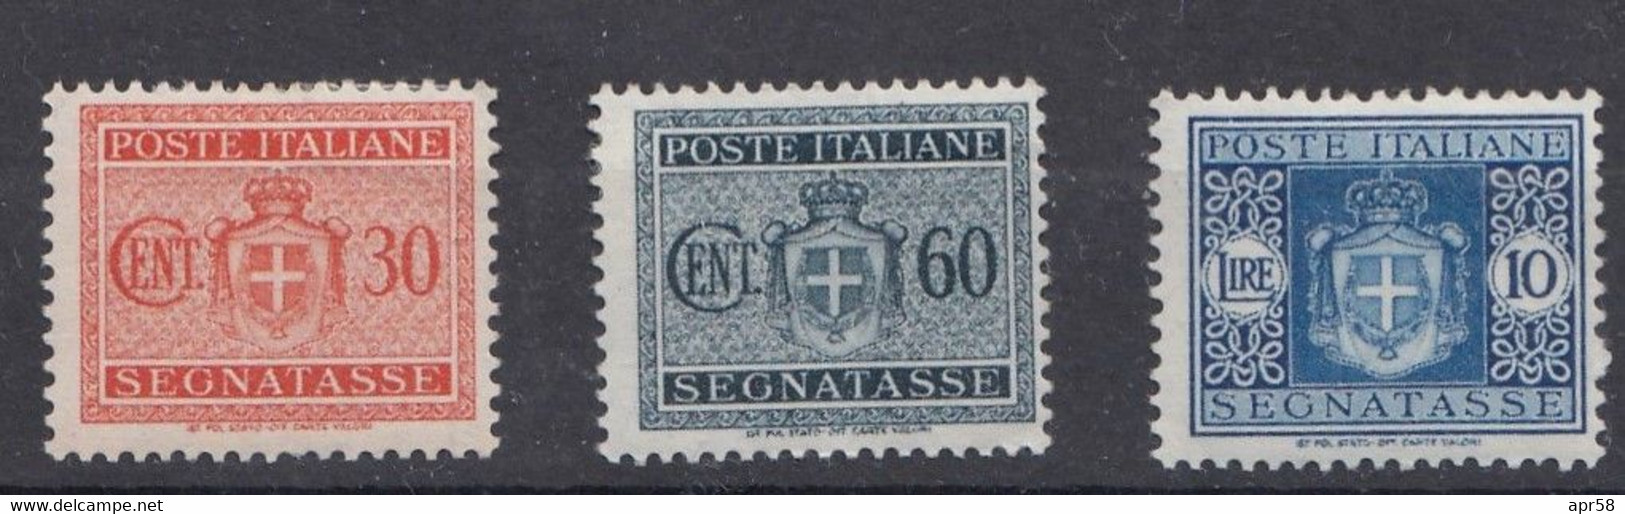 1945 Segnatasse    Sass77-30c-sass-80-60c-sass84-10li - Portomarken